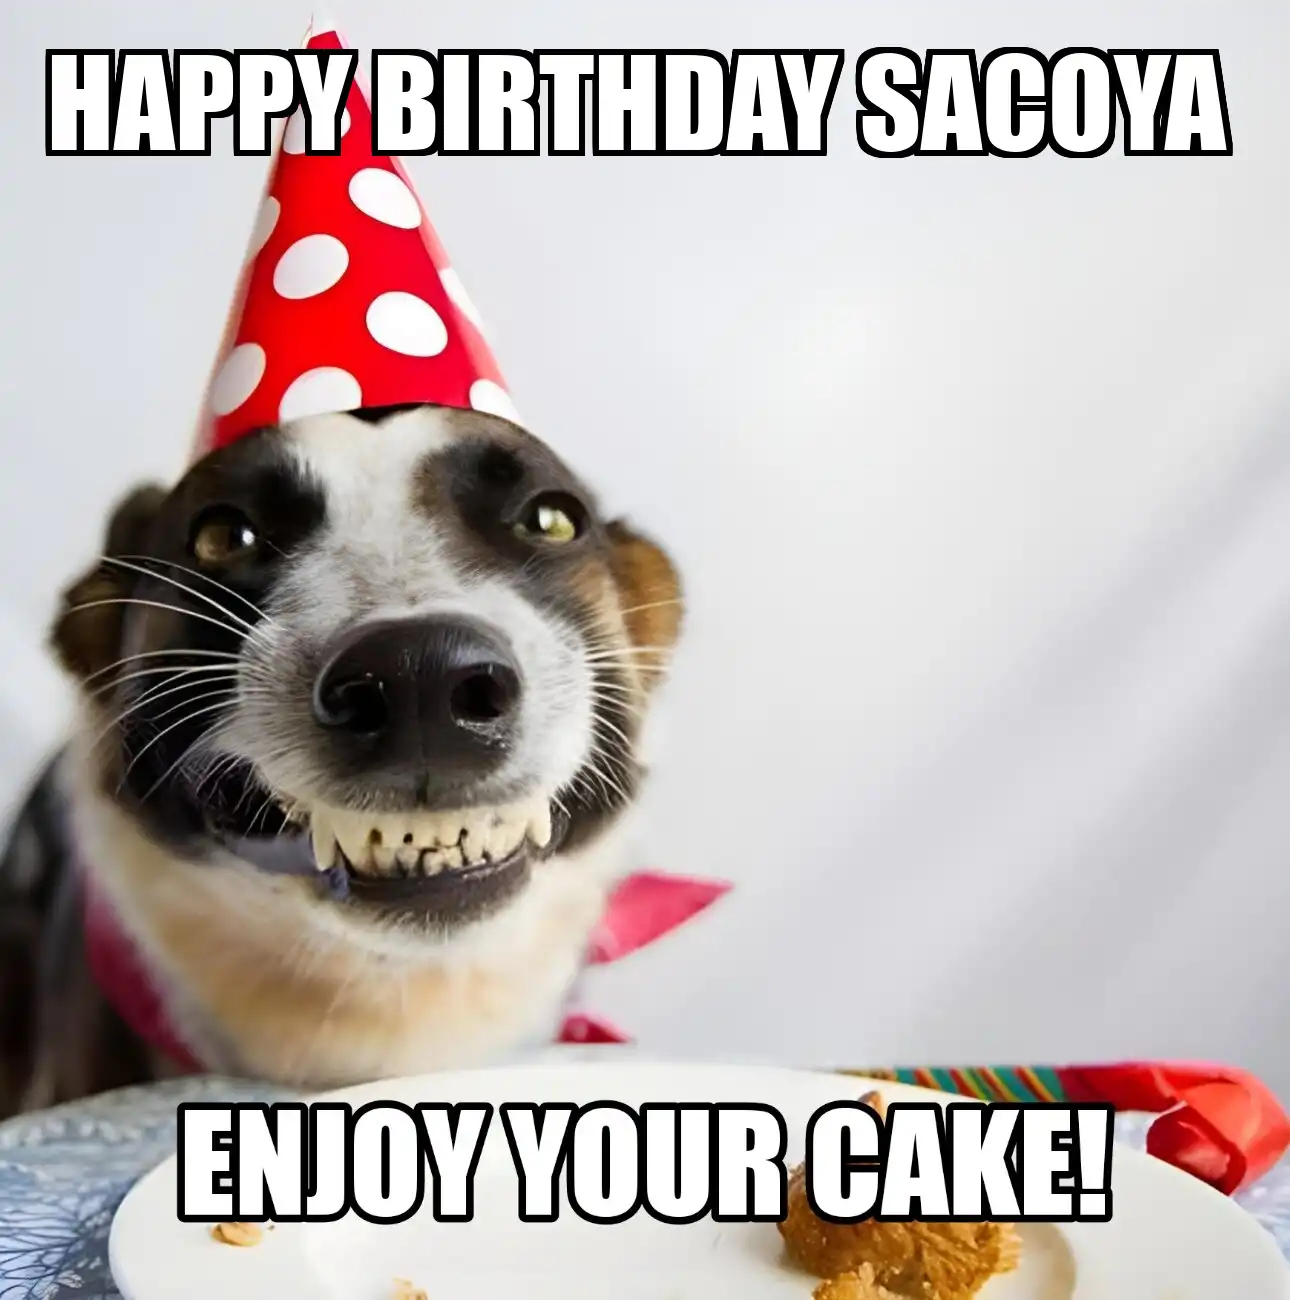 Happy Birthday Sacoya Enjoy Your Cake Dog Meme